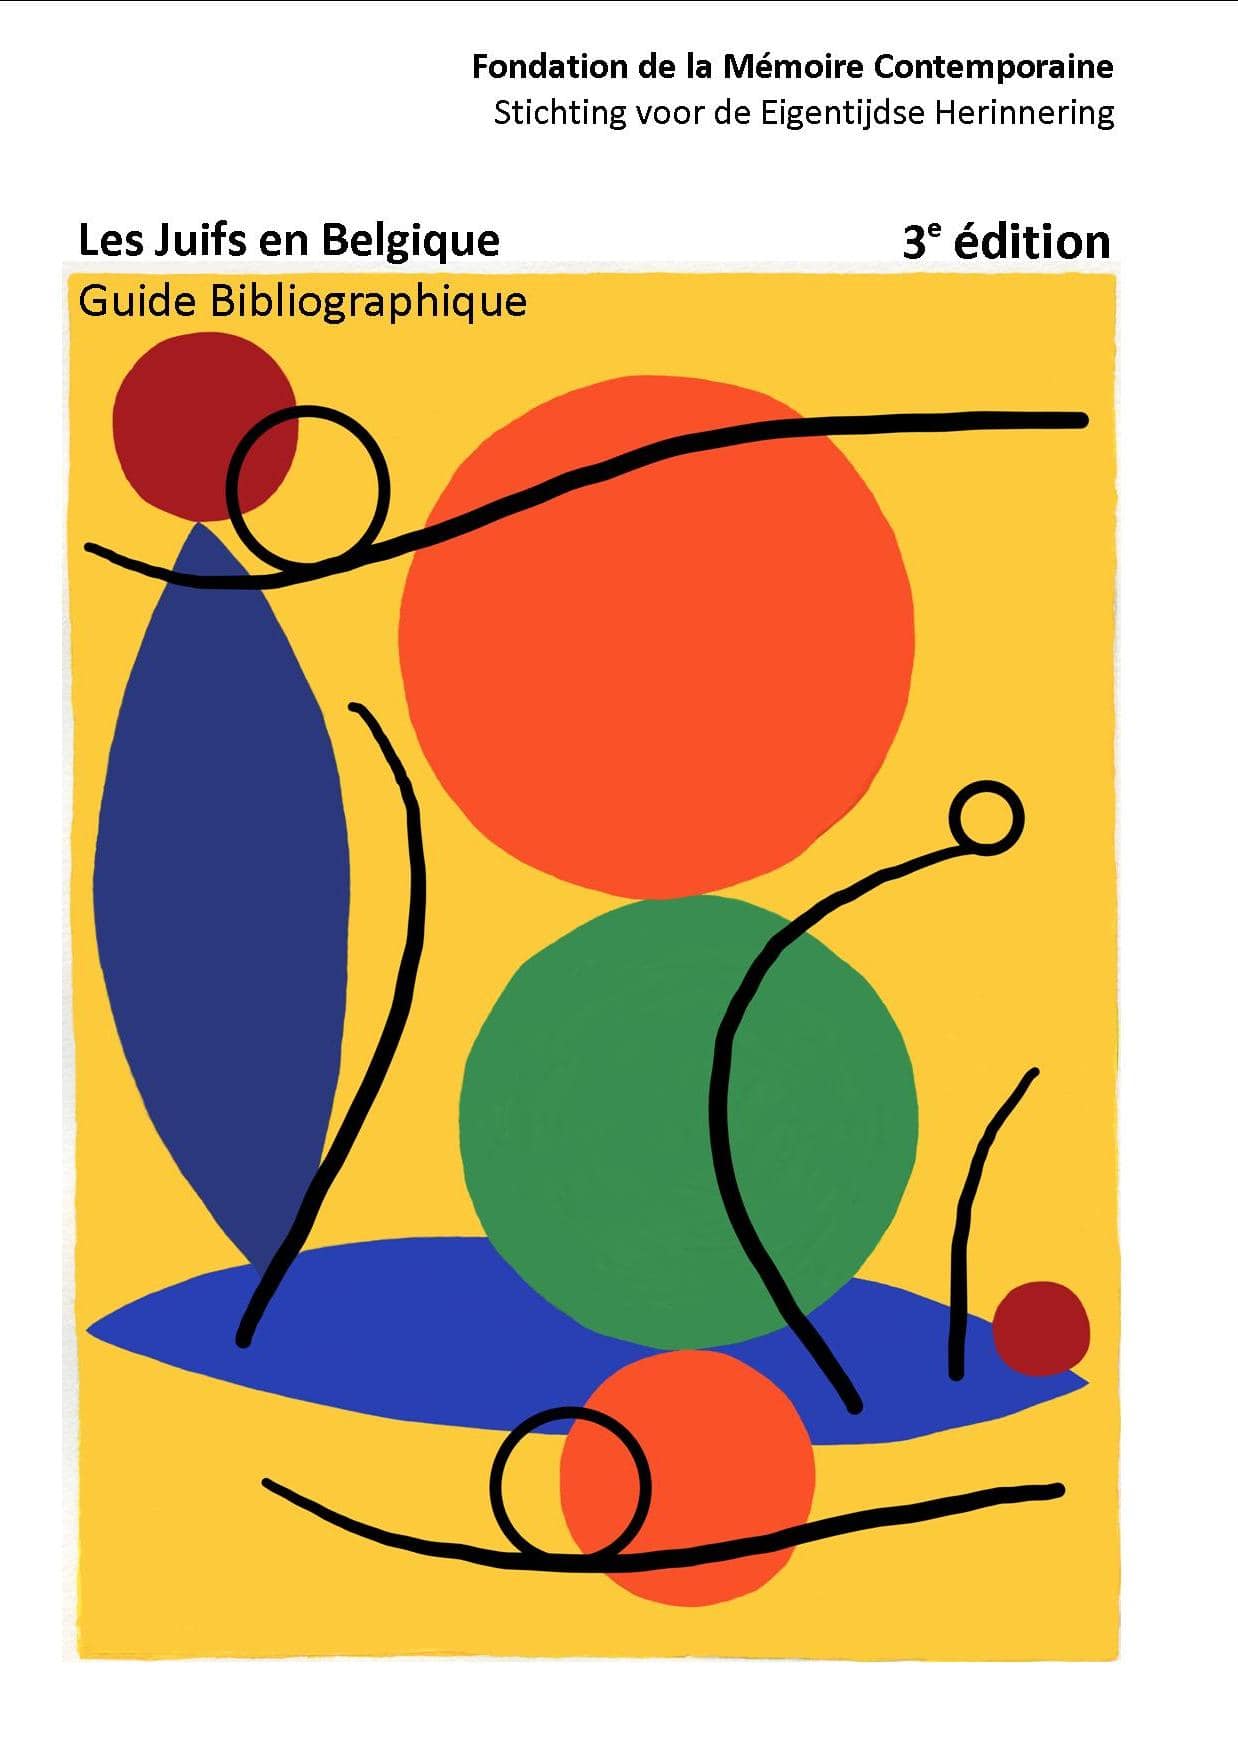 Les Juifs en Belgique: Guide Bibliographique (3e édition)